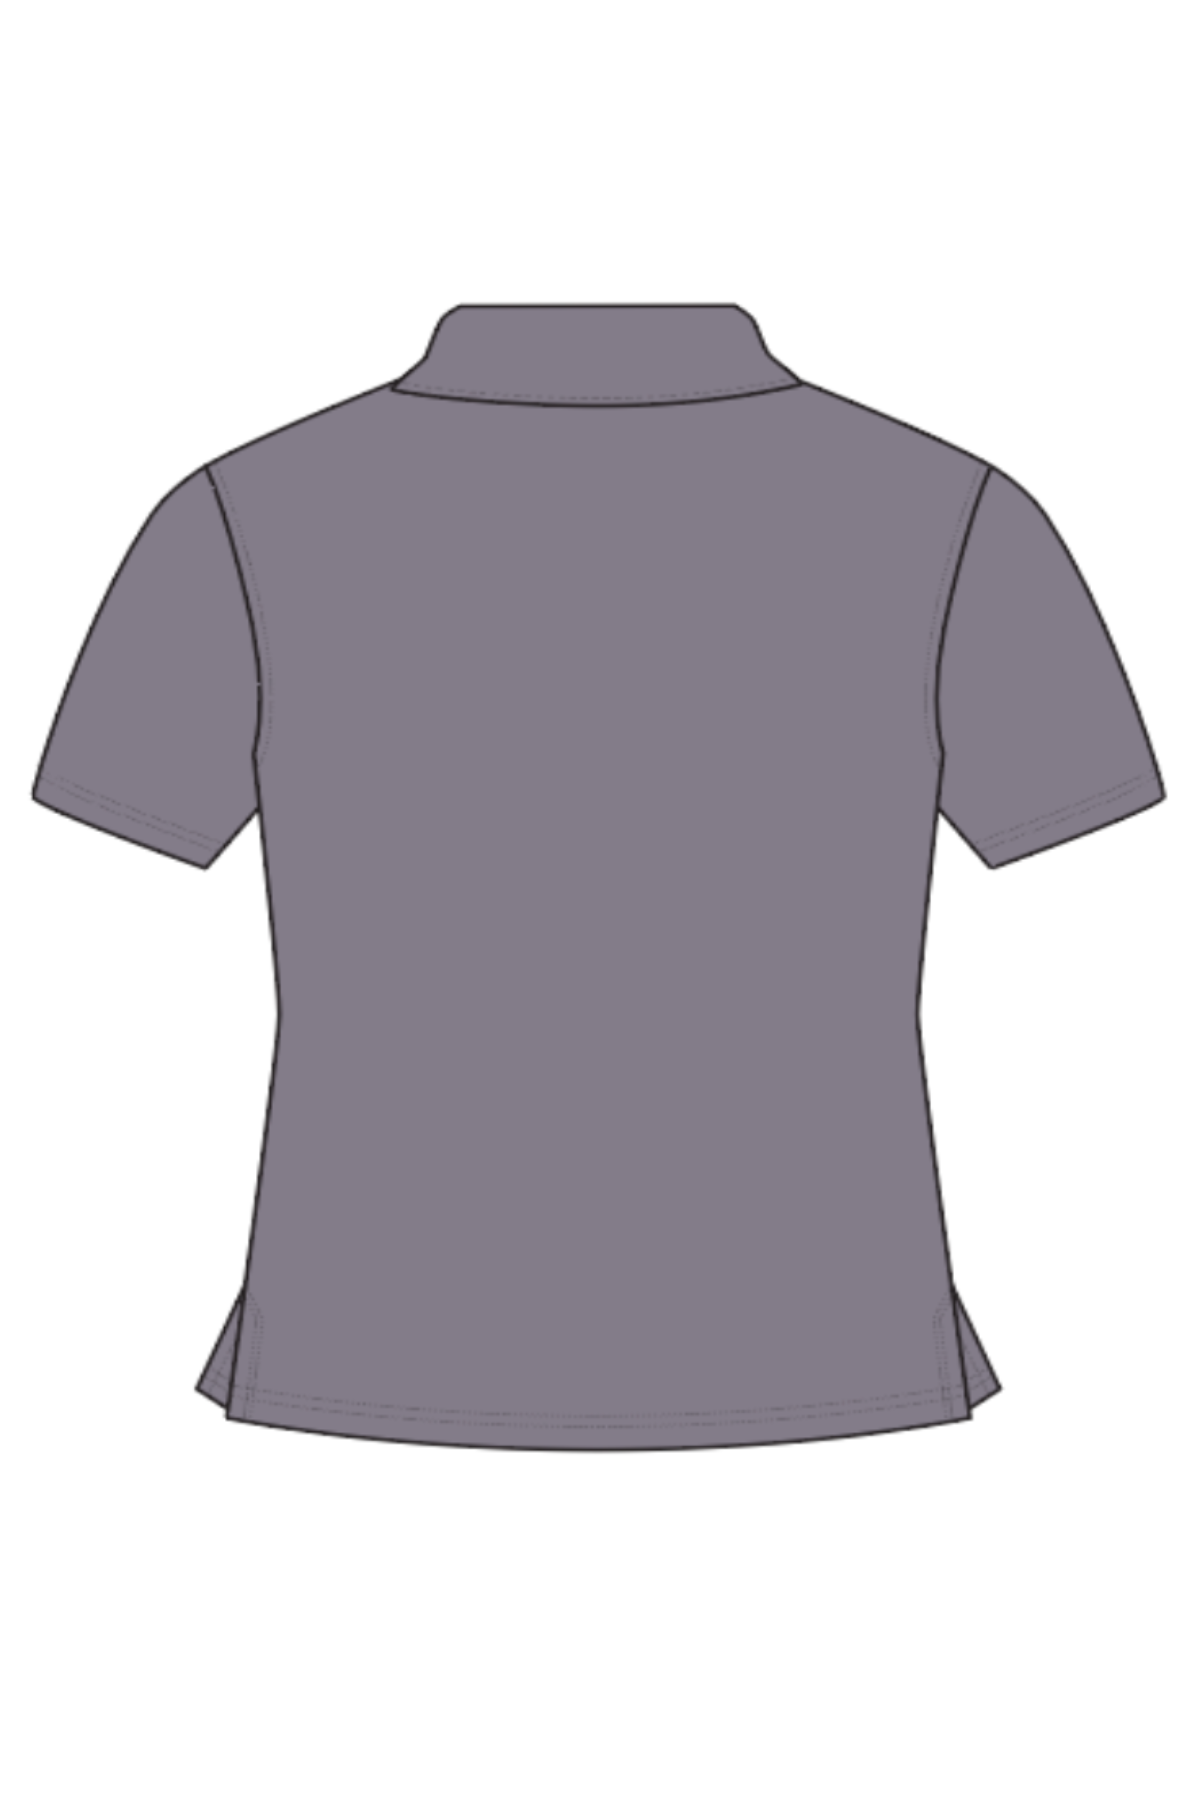 JSX Women's Polo Shirt - Grey